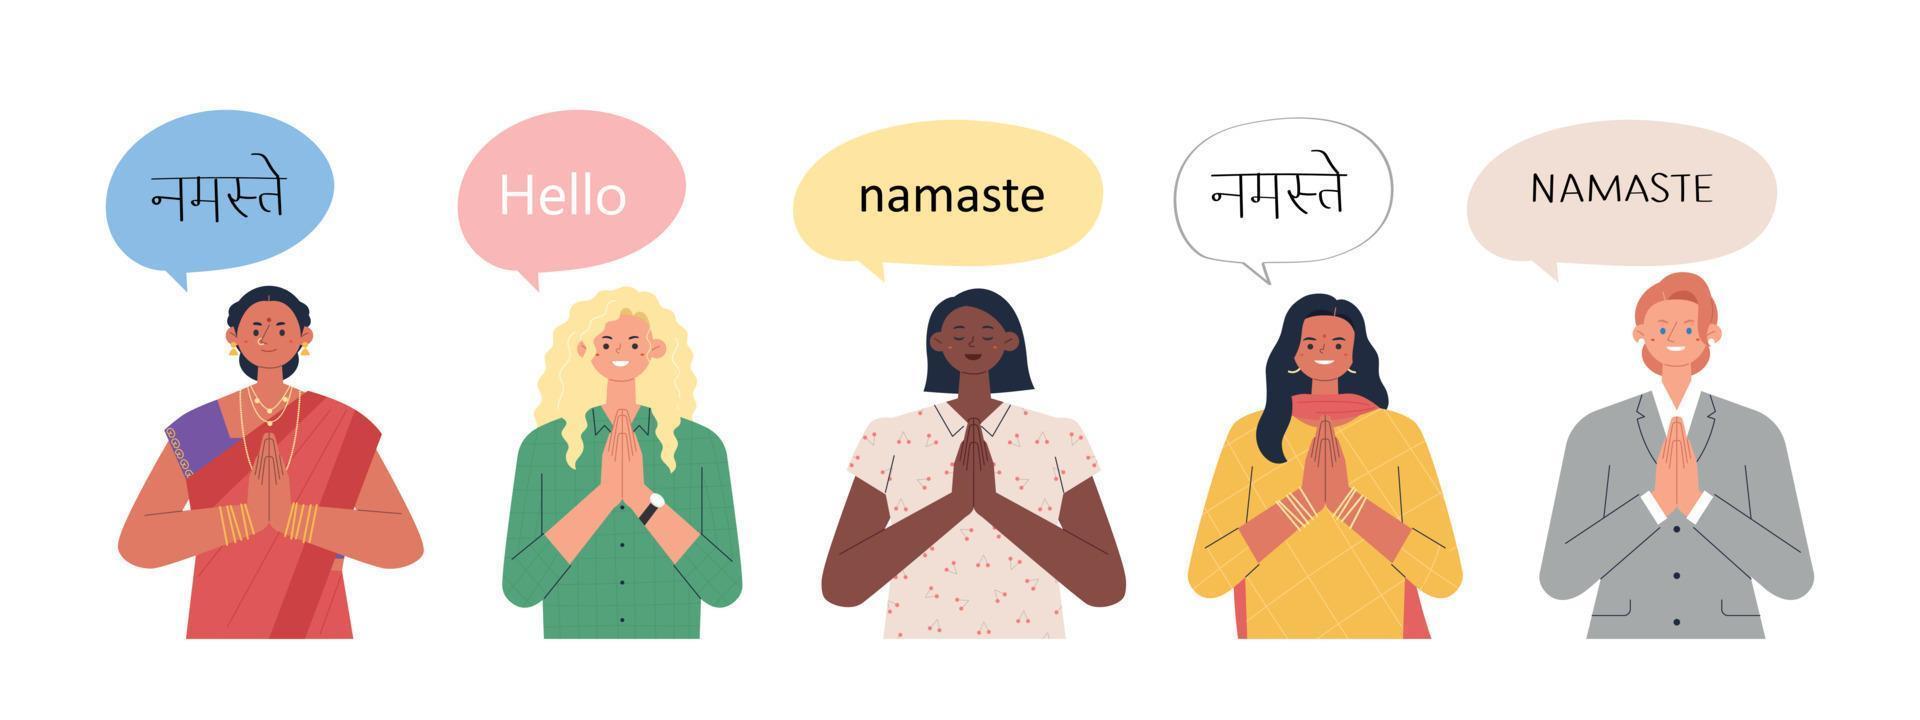 vrouwen van verschillende rassen houden elkaars hand vast en zeggen een indische groet. platte ontwerp stijl vectorillustratie vector